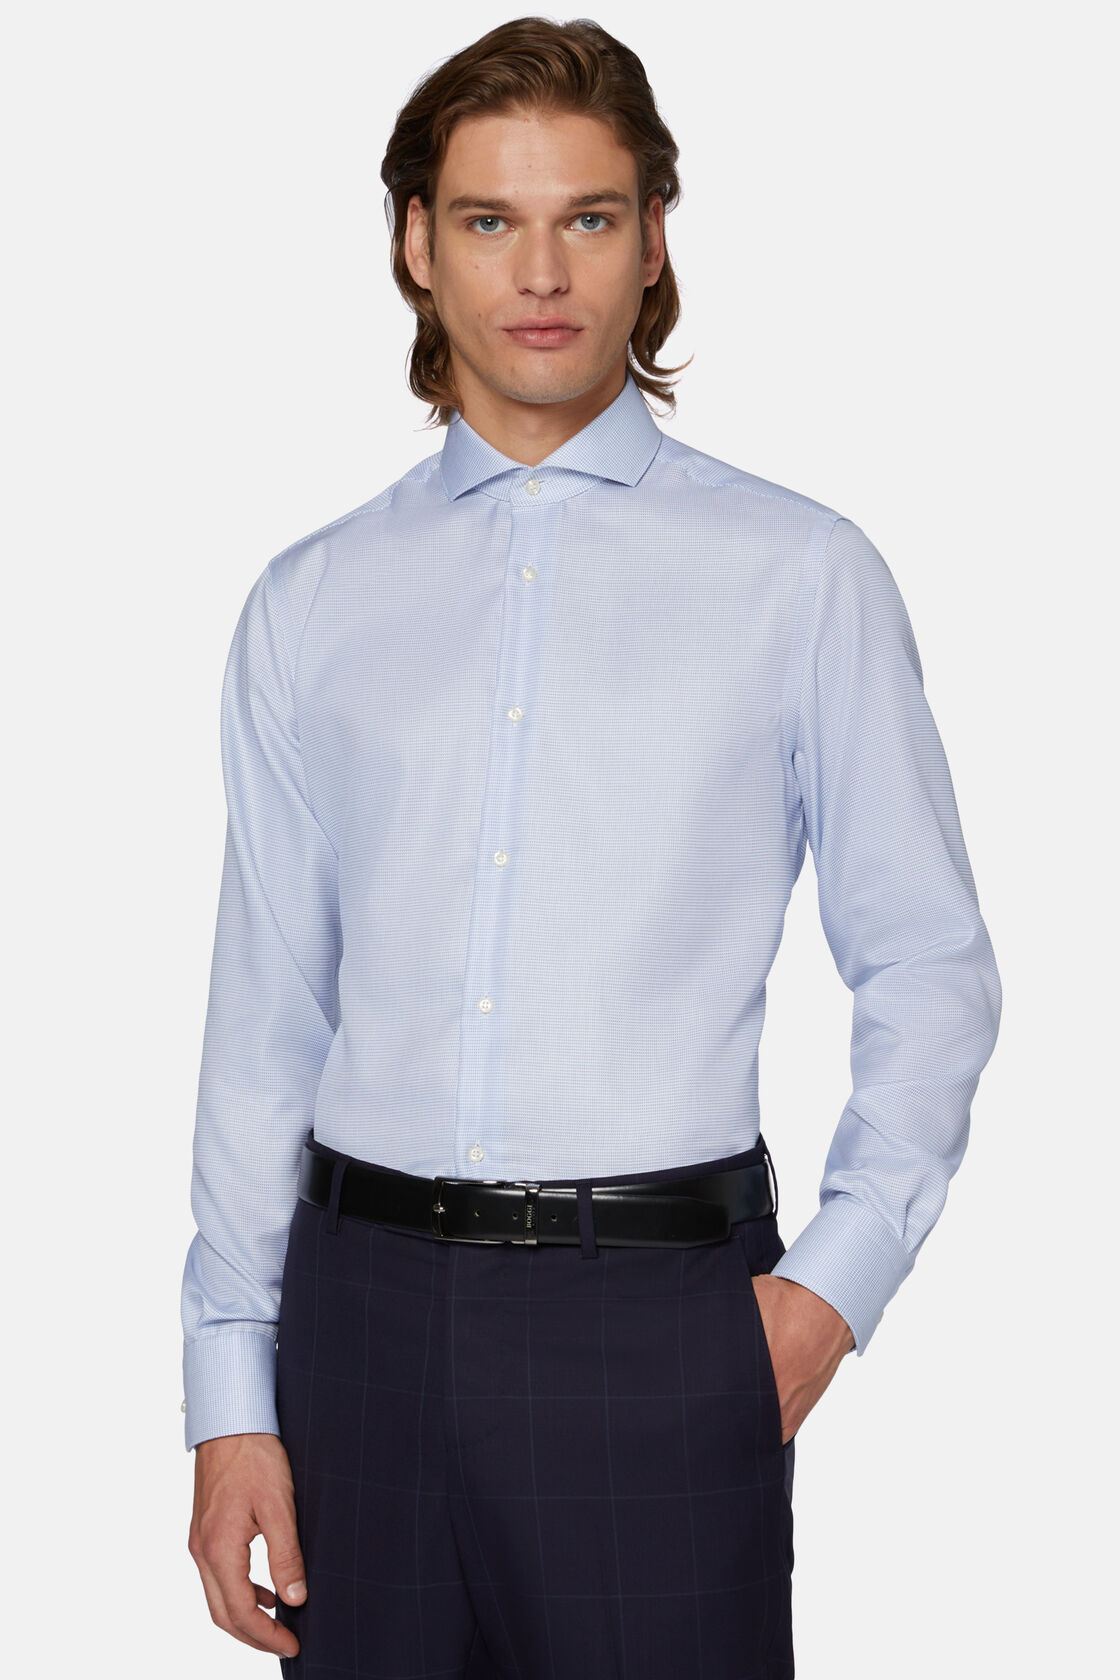 Βαμβακερό πουκάμισο με στενή εφαρμογή, σε μπλε ρουά χρώμα, Bluette, hi-res